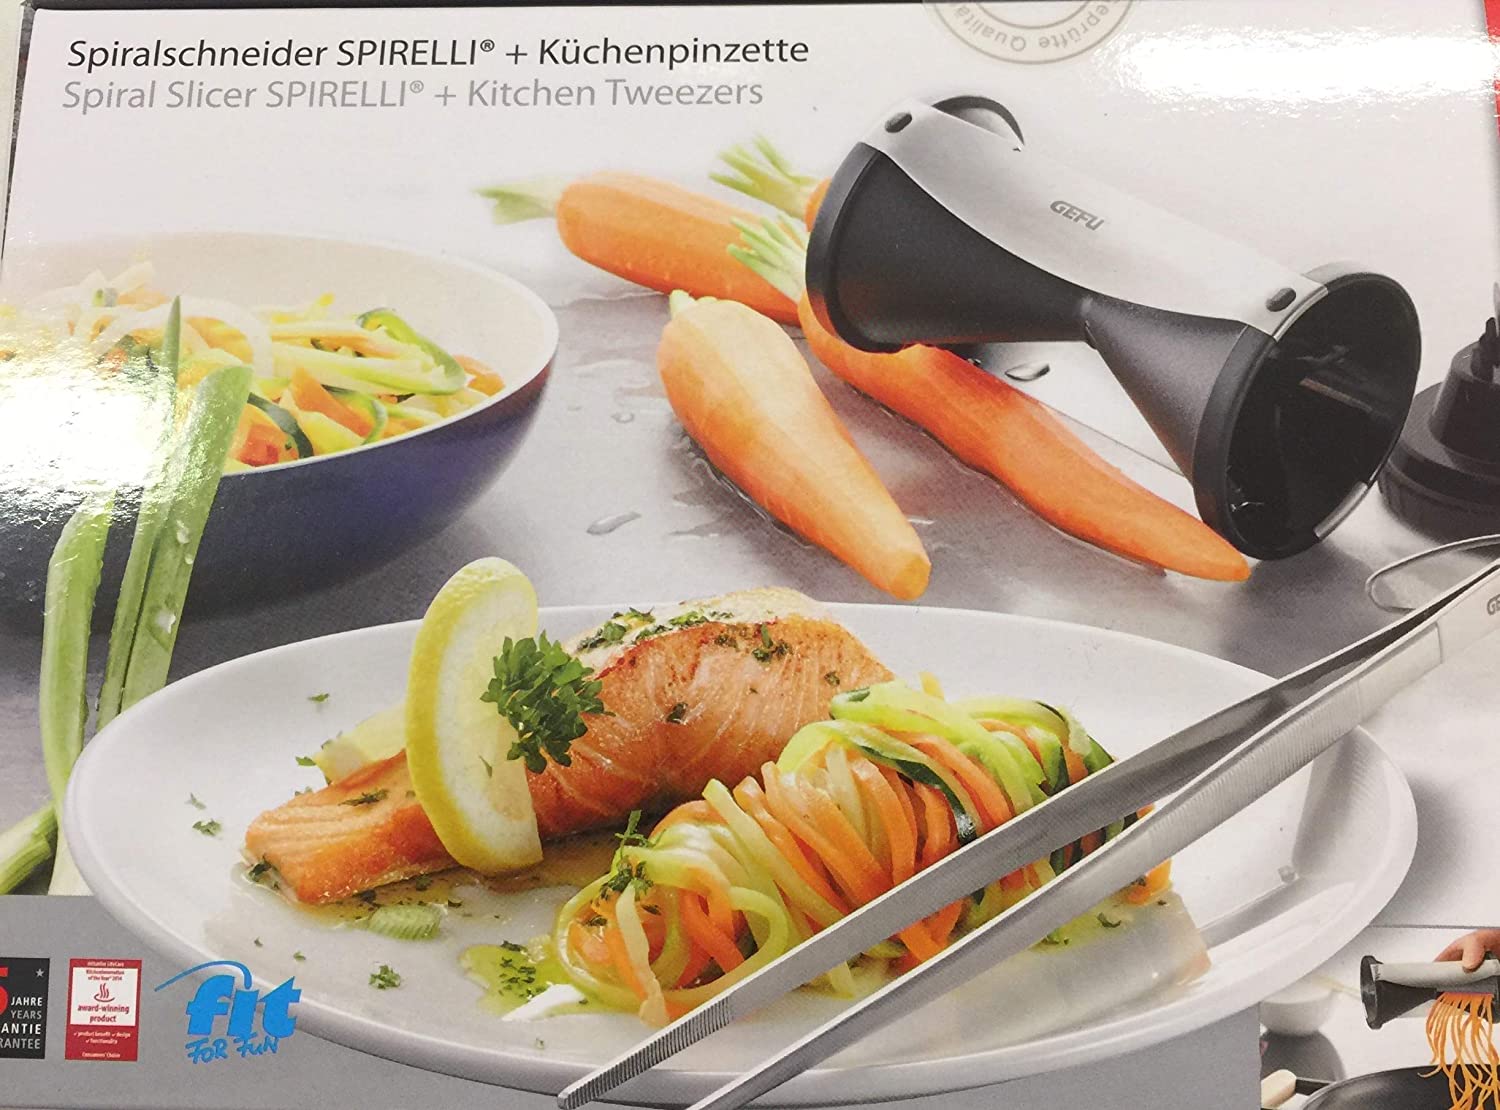 GEFU Spirelle 13460 Spiral Cutter Set and Kitchen Tweezers (11900) [SP]